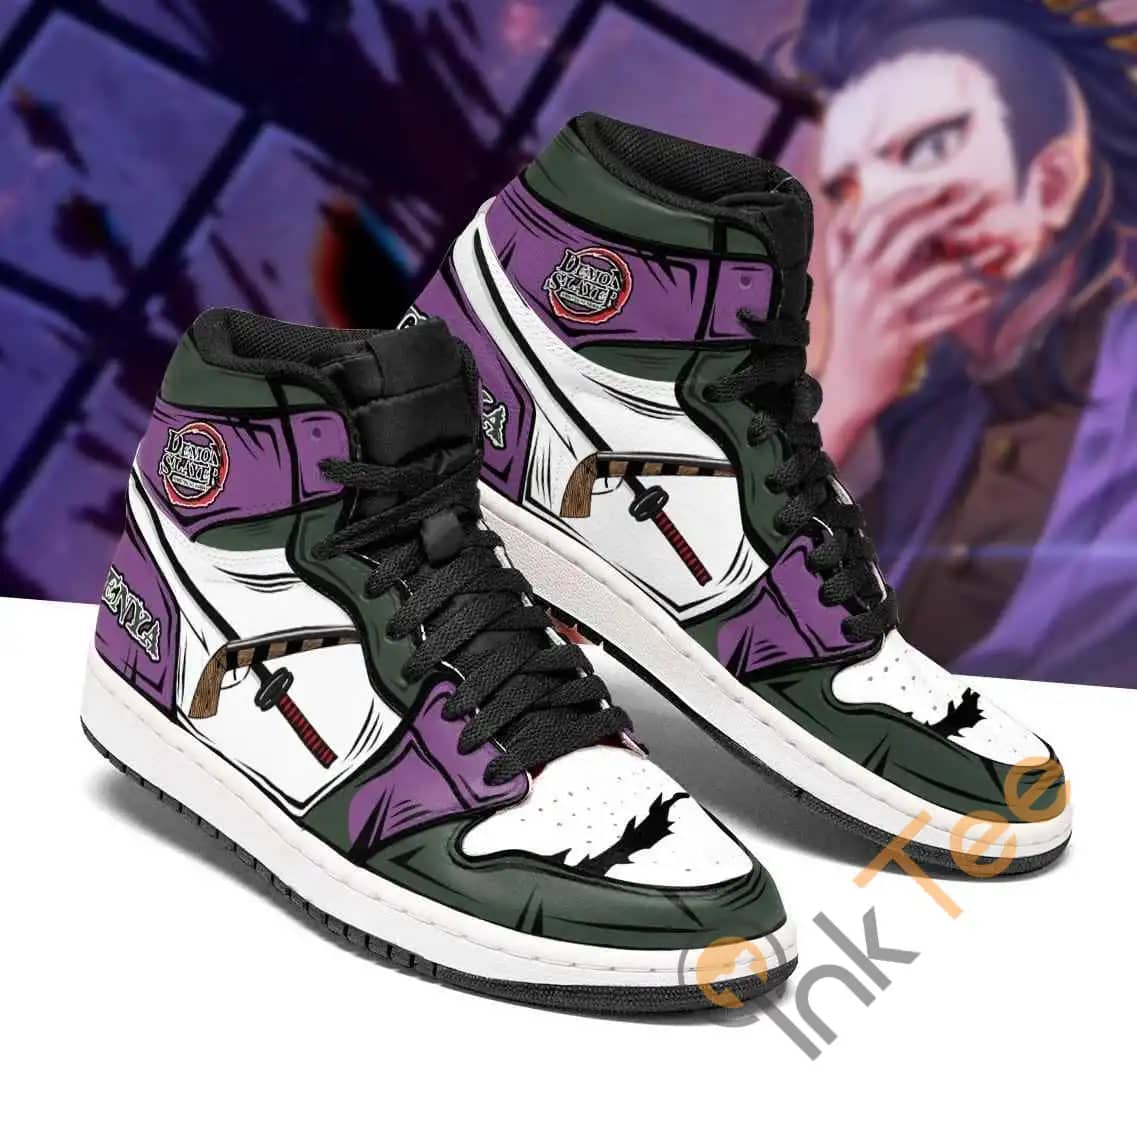 Genja Costume Demon Slayer Sneakers Anime Air Jordan Shoes